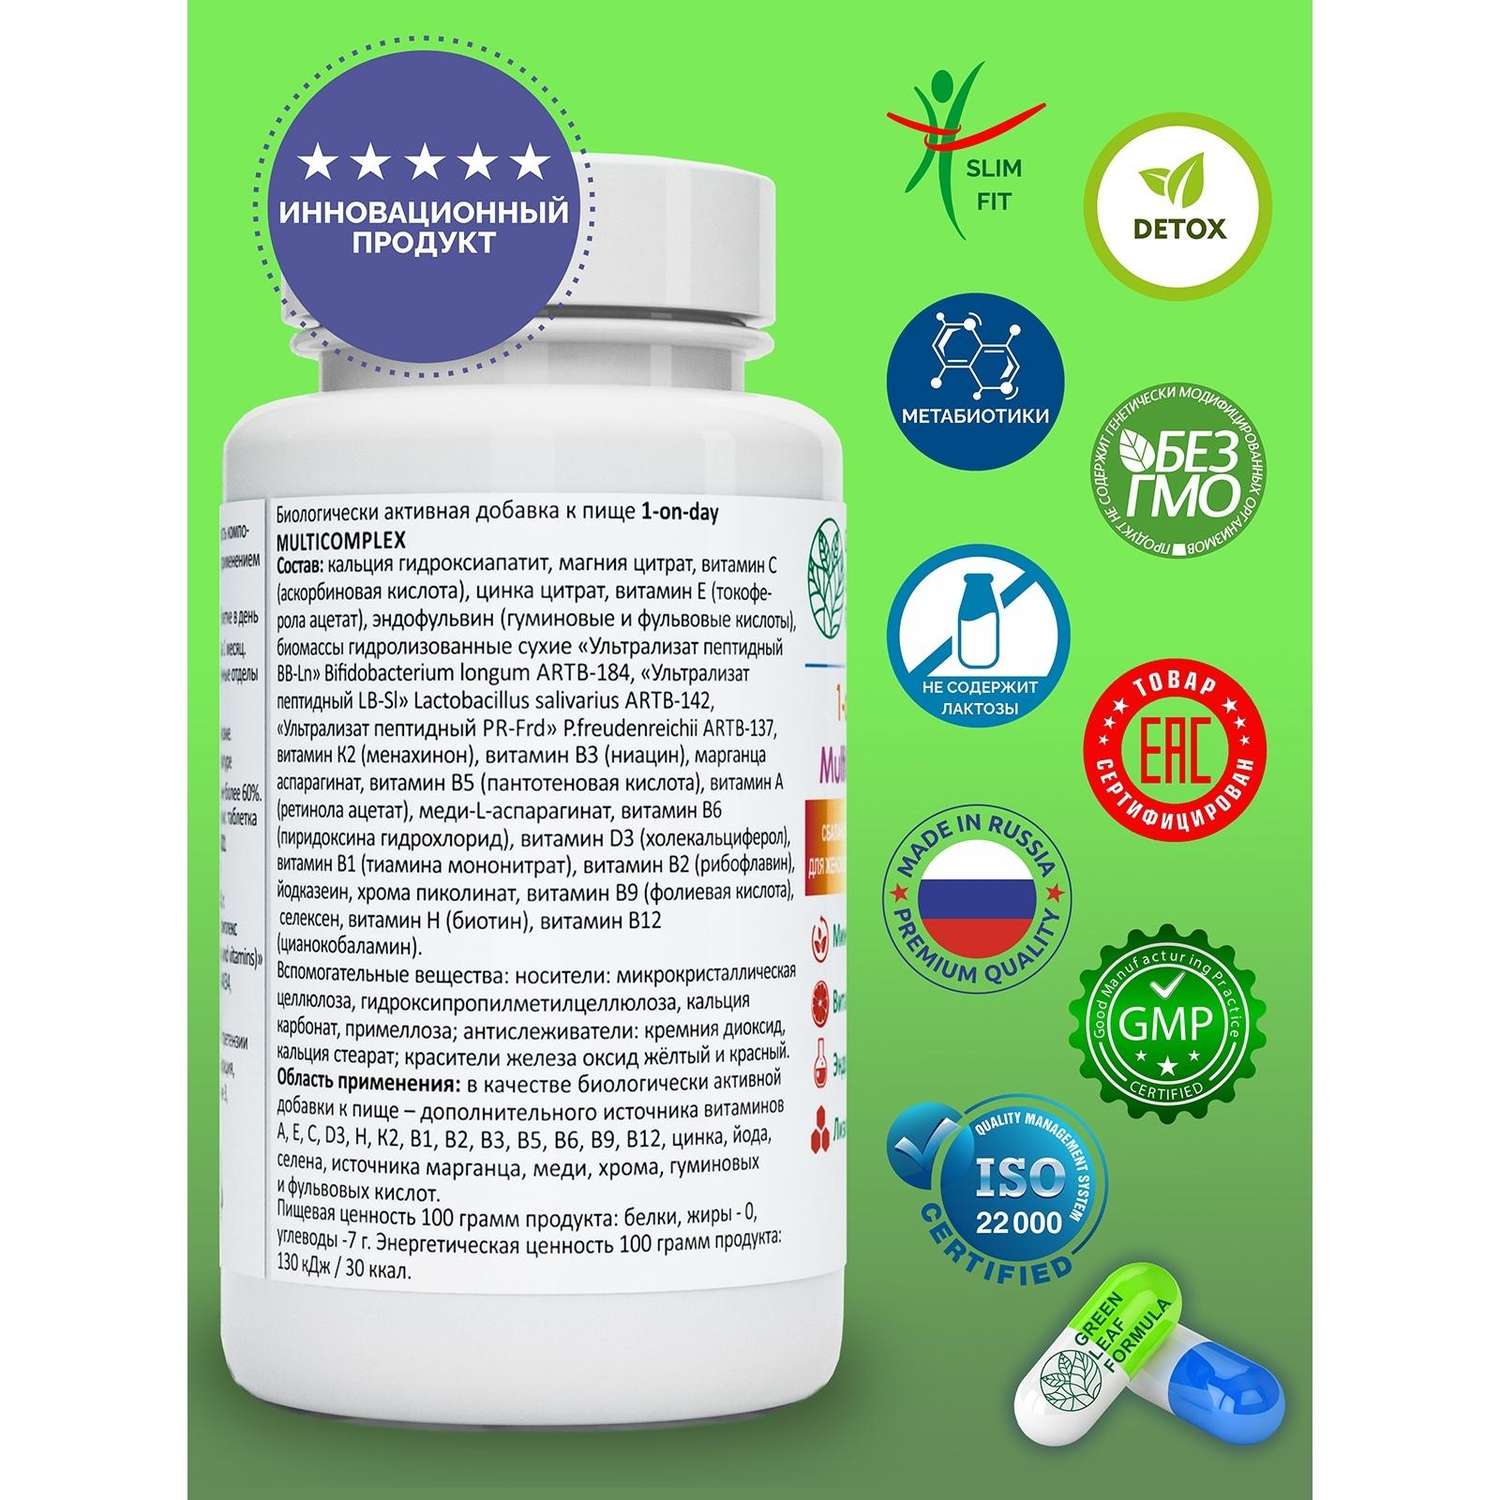 Витаминно-минеральный комплекс Green Leaf Formula с метабиотиками 13 витаминов + 8 минералов 1050 мг 30 таблеток - фото 2